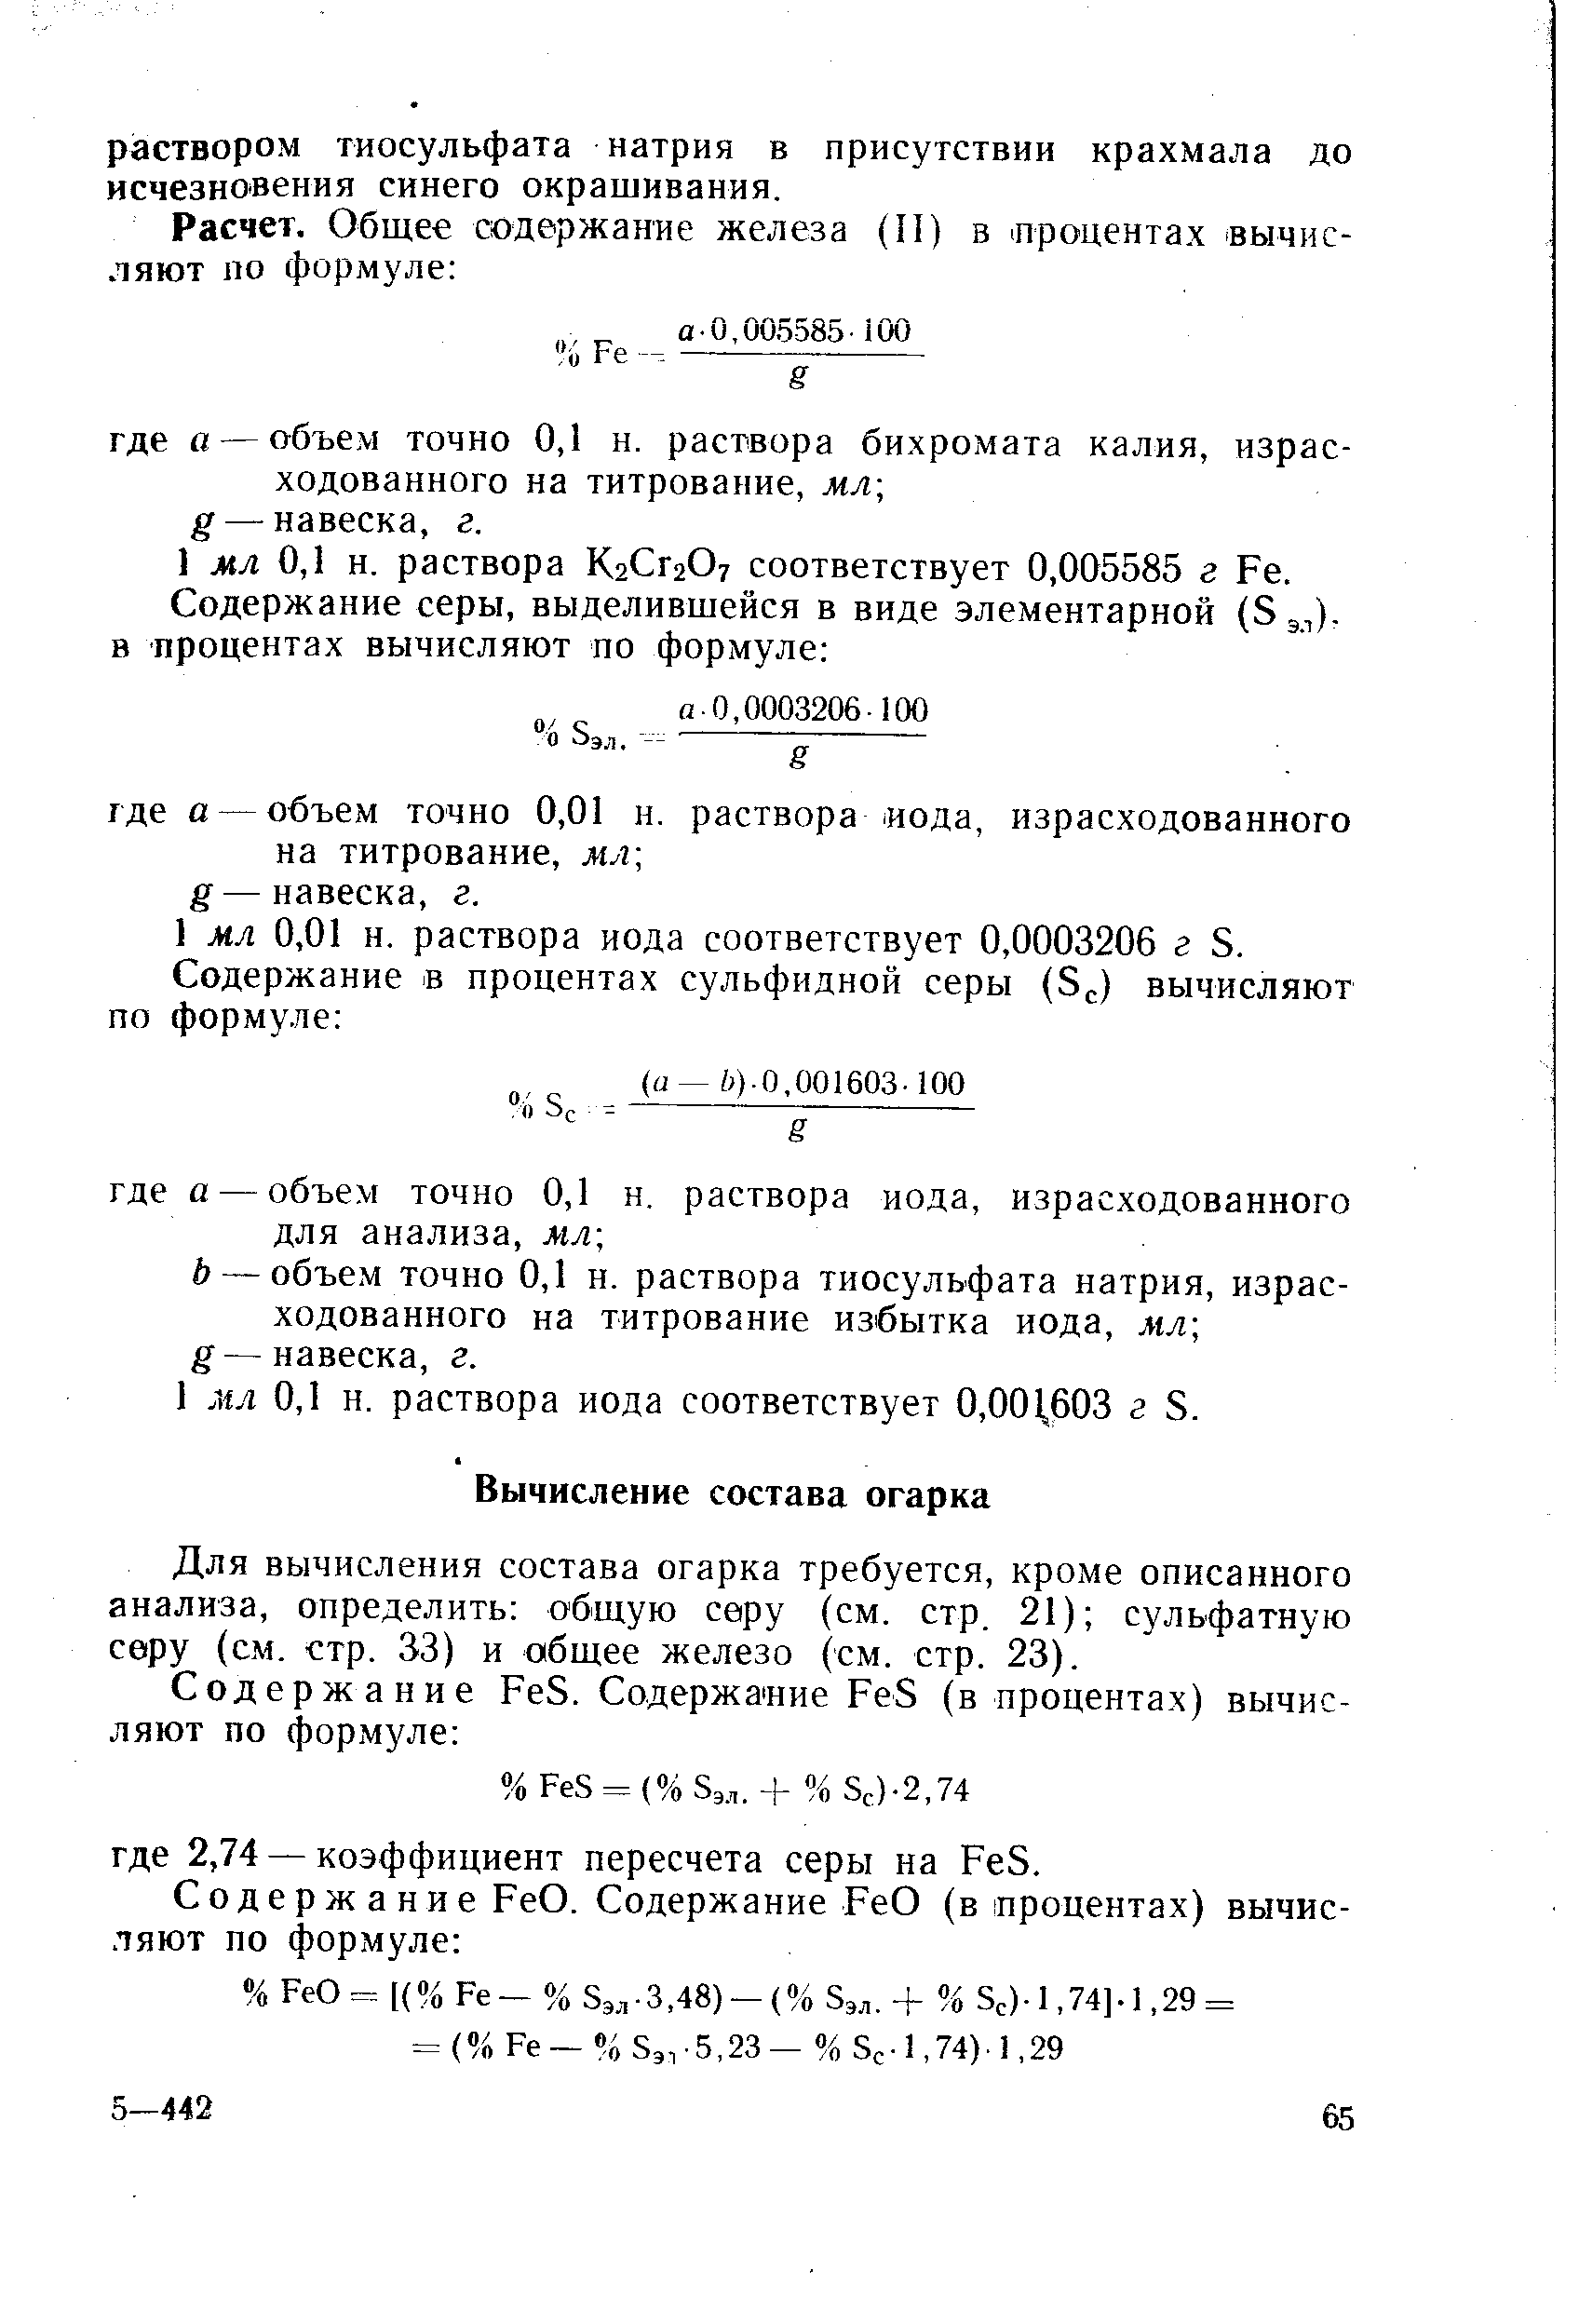 Для вычисления состава огарка требуется, кроме описанного анализа, определить общую серу (см. стр. 21) сульфатную серу (с.м. стр. 33) и общее железо (см. стр. 23).